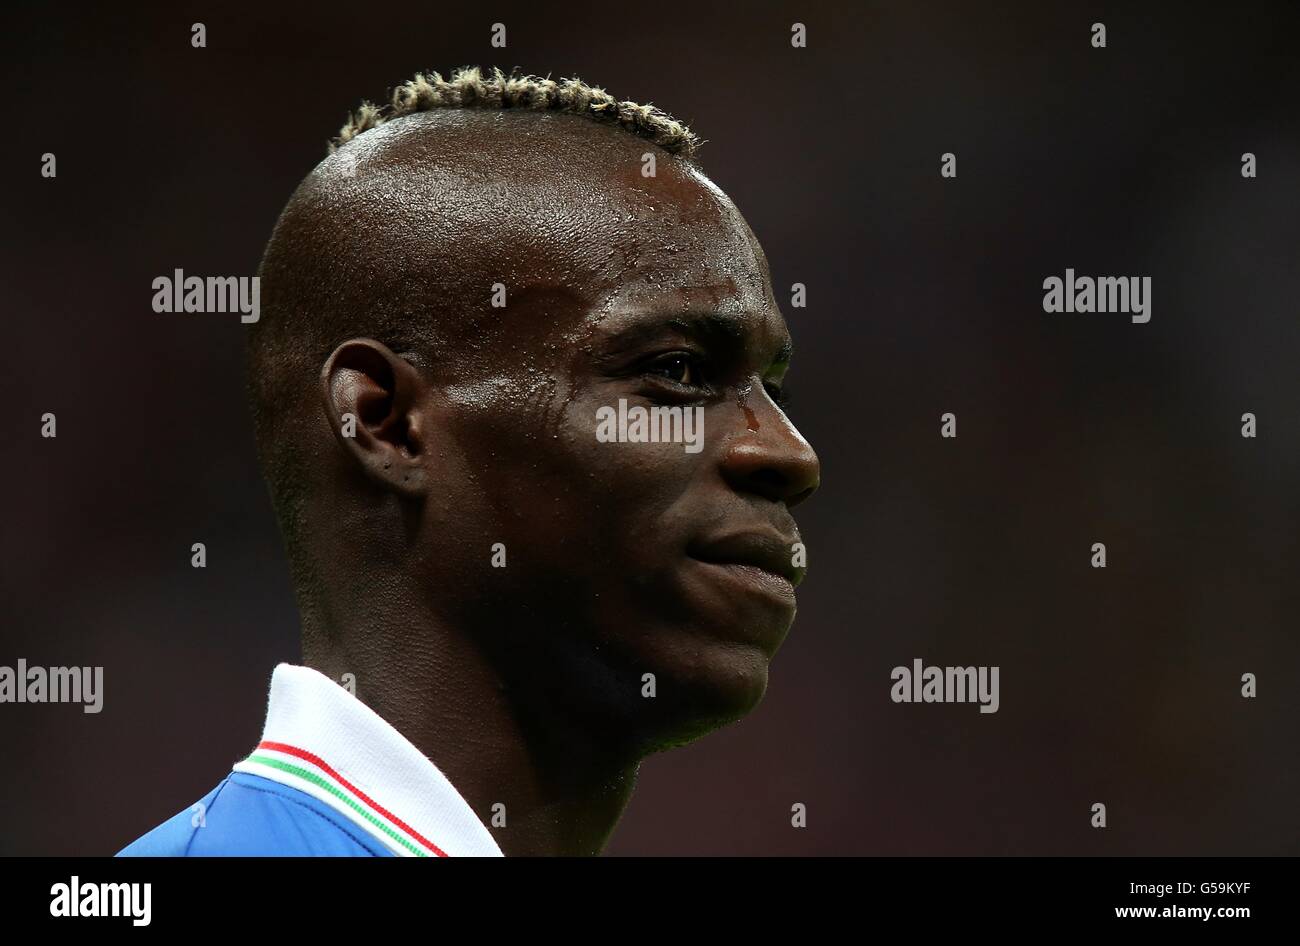 Soccer - UEFA Euro 2012 - Semi Final - Germany v Italy - National Stadium. Italy's Mario Balotelli Stock Photo